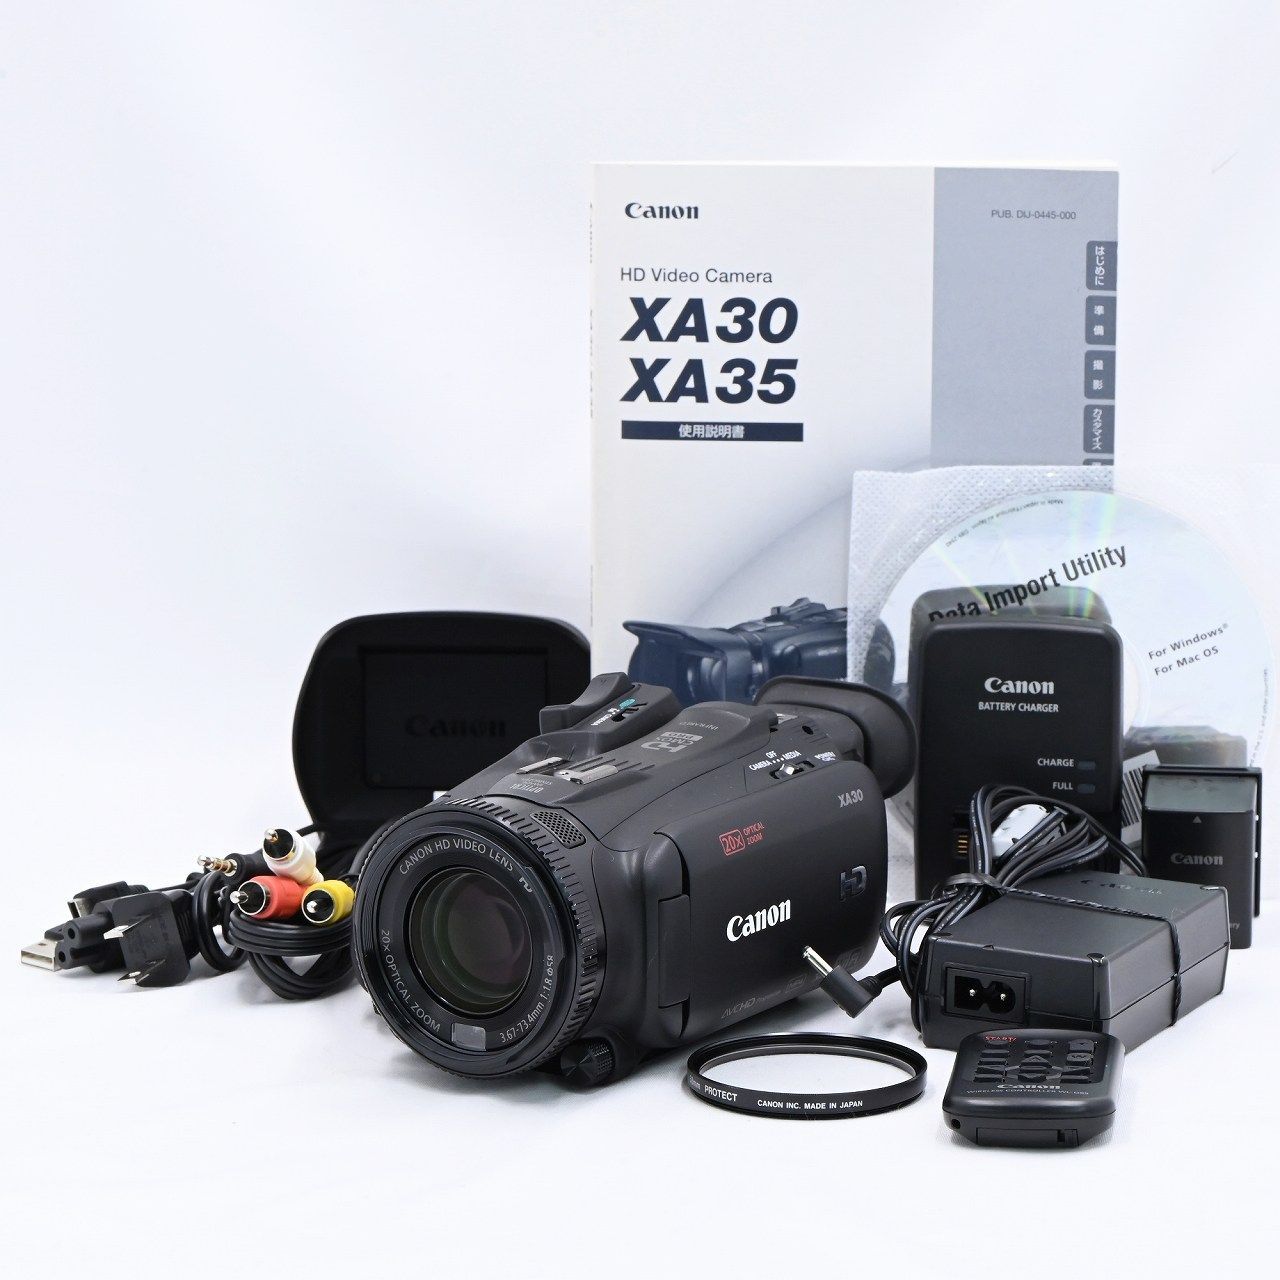 キヤノン Canon XA30 業務用HDデジタルビデオカメラ ビデオカメラ 